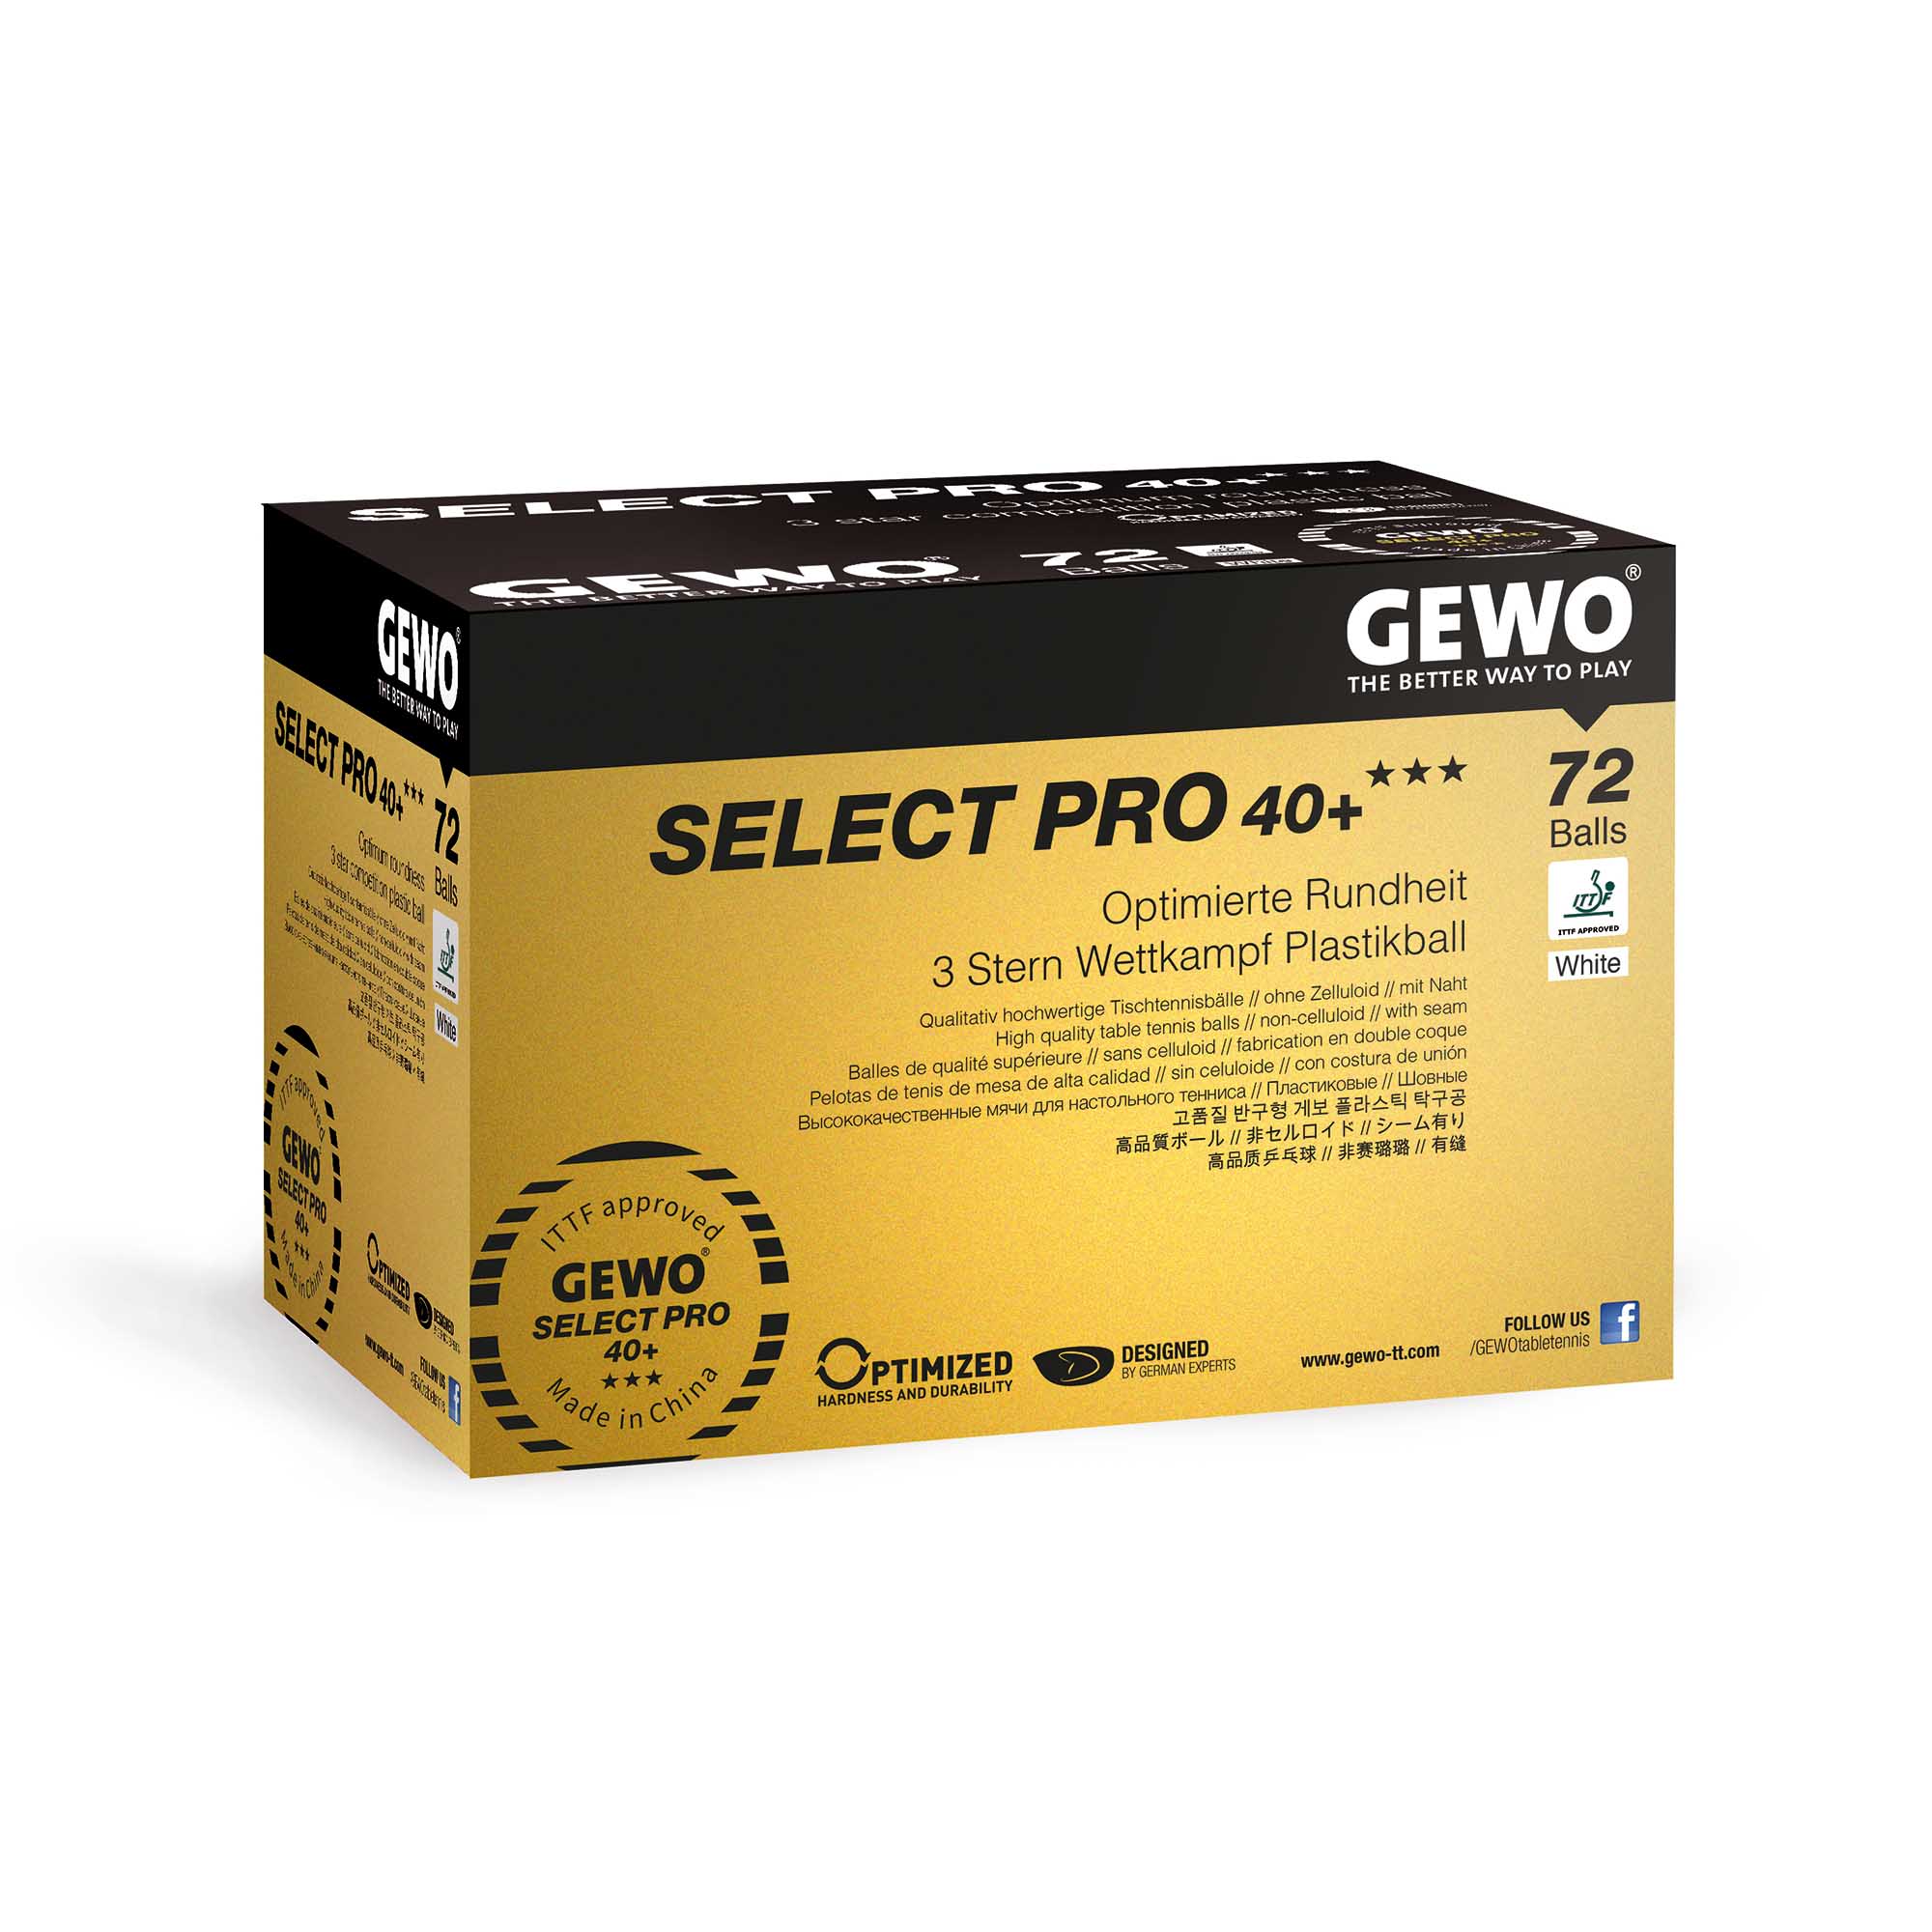 GEWO Ball Select Pro 40+ *** 72er weiß